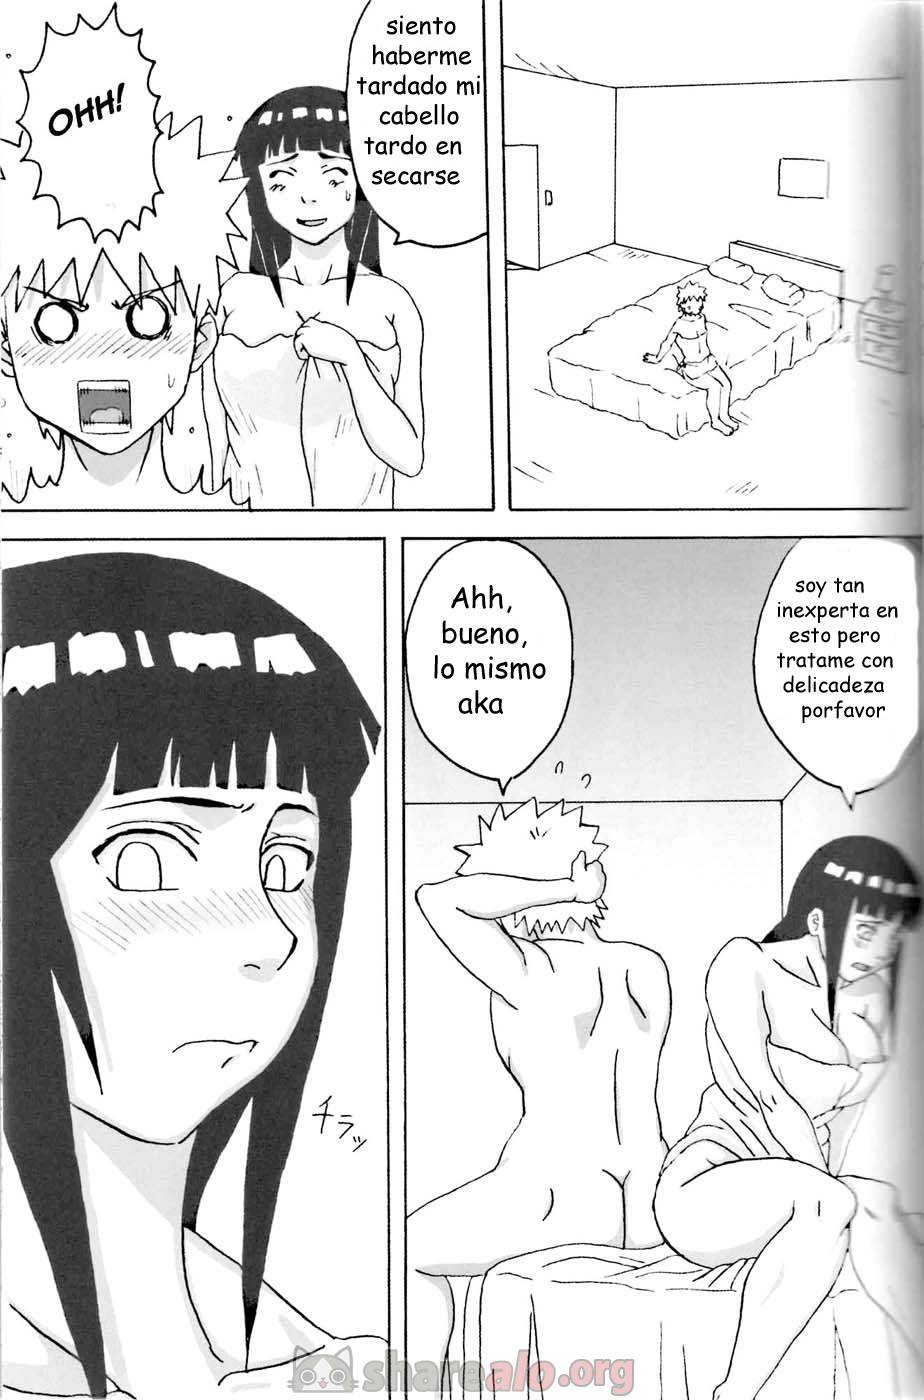 Hinata Ganbaru Doujin - 12 - Comics Porno - Hentai Manga - Cartoon XXX